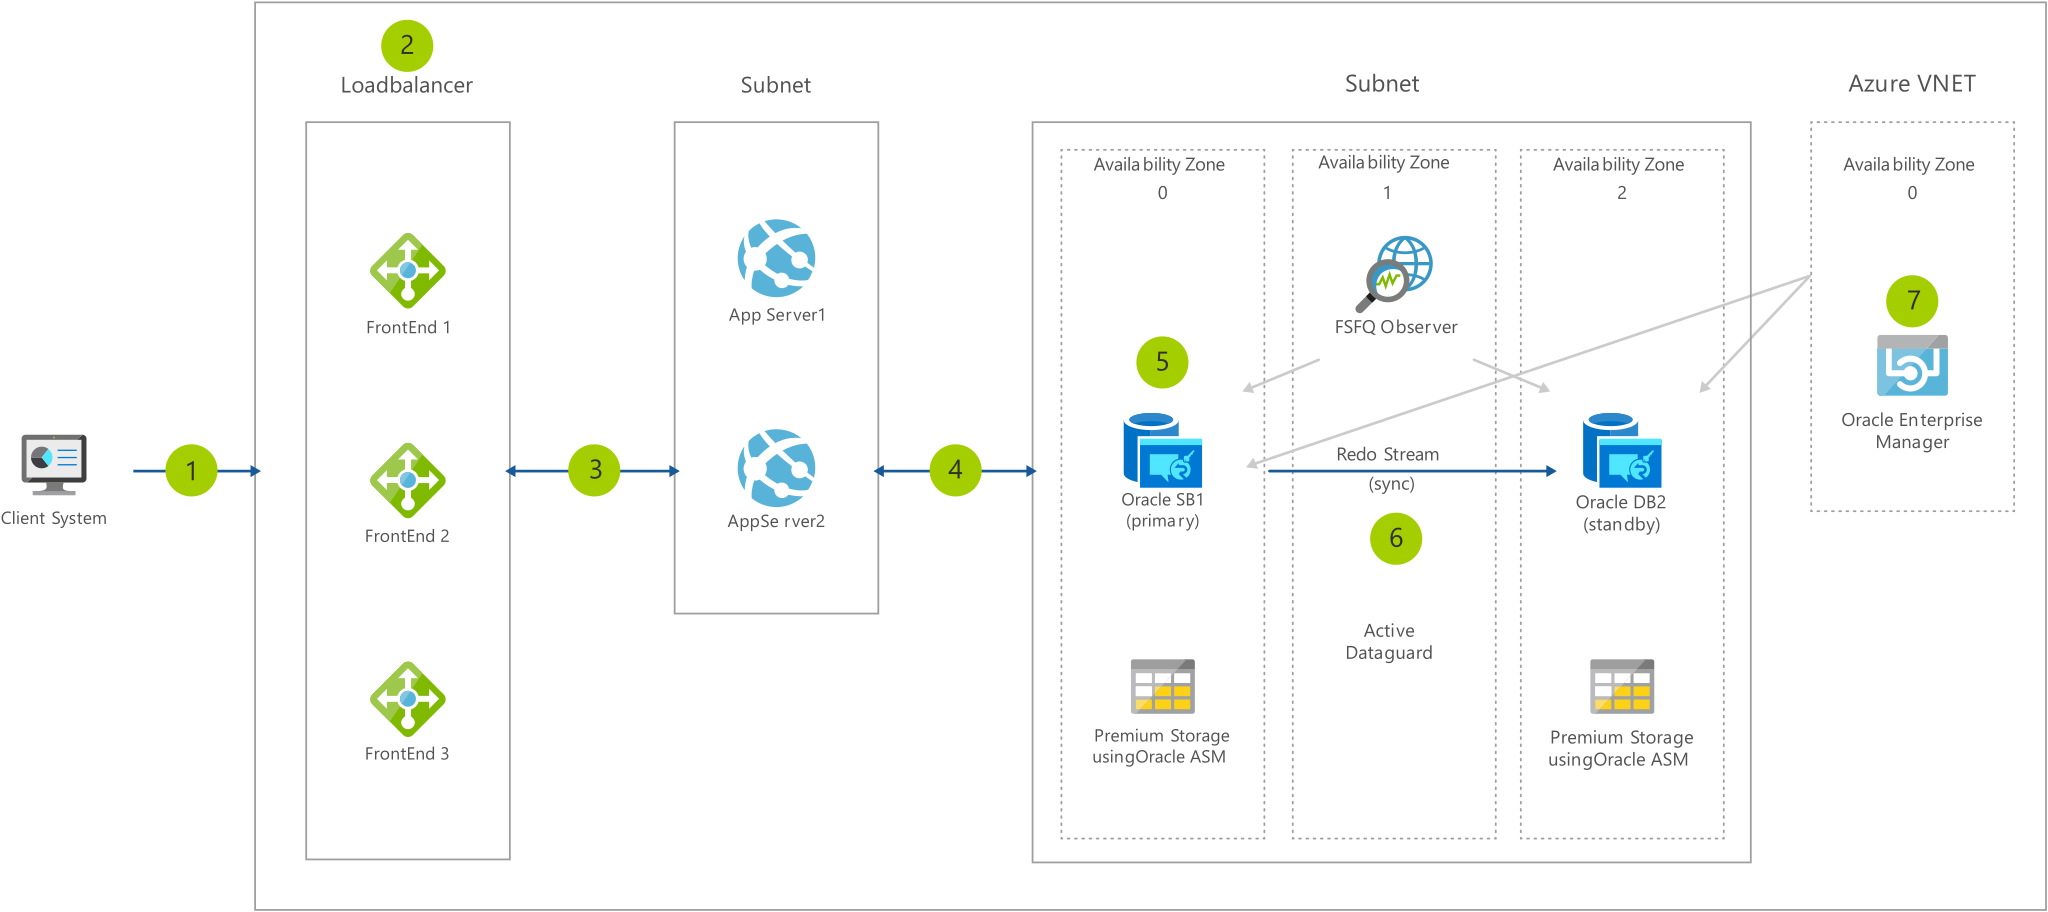 Diagrama de arquitectura que muestra desde el cliente a través del equilibrador de carga y las subredes hasta Azure V NET.